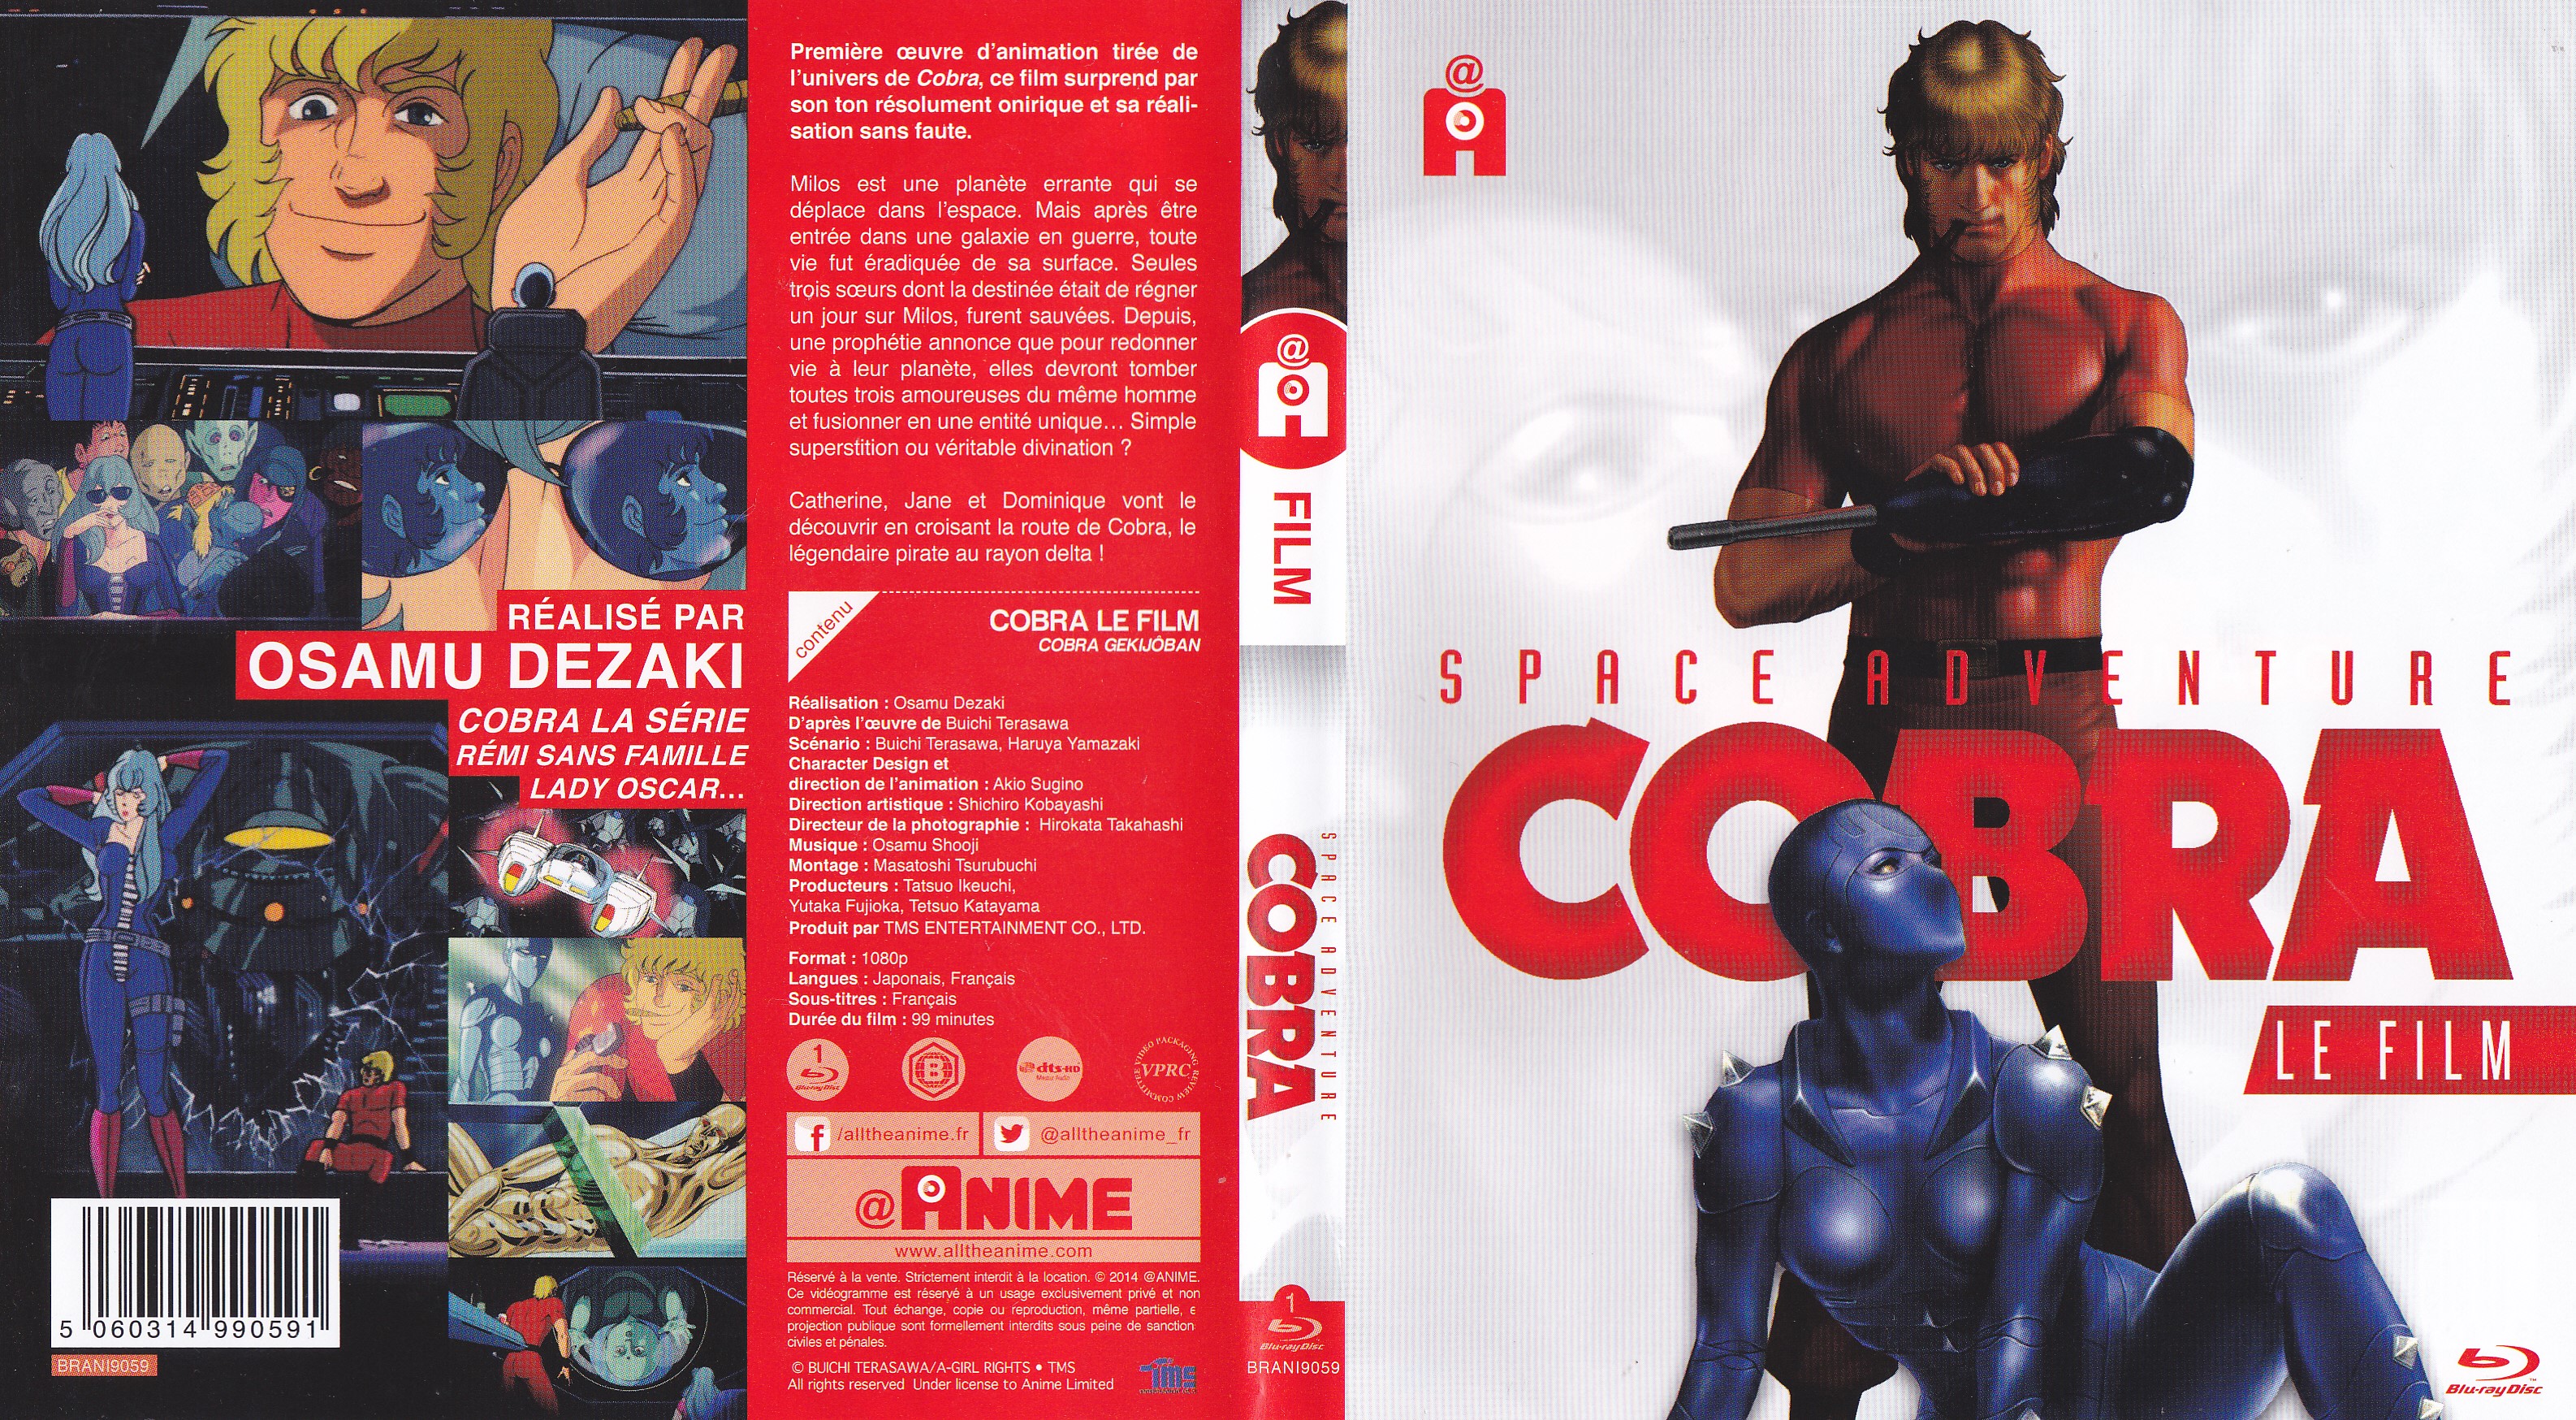 Jaquette DVD Cobra le film (BLU-RAY) v2